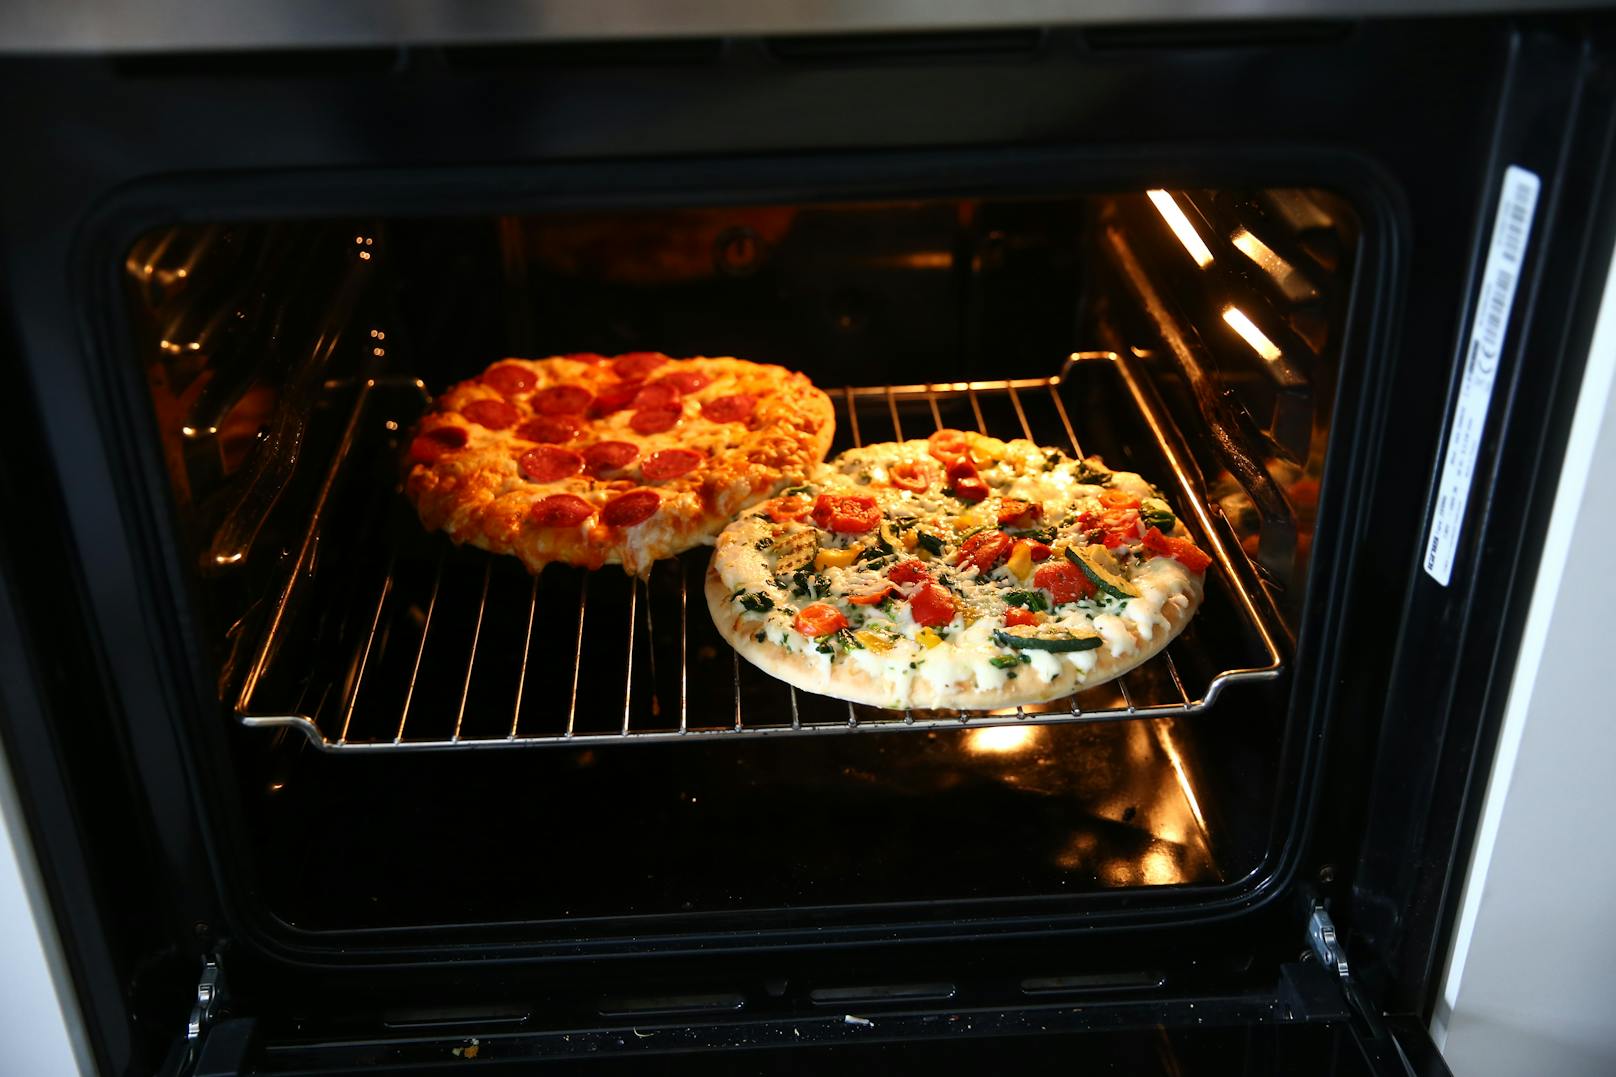 Sofort gingen die Pizzen in den Ofen.